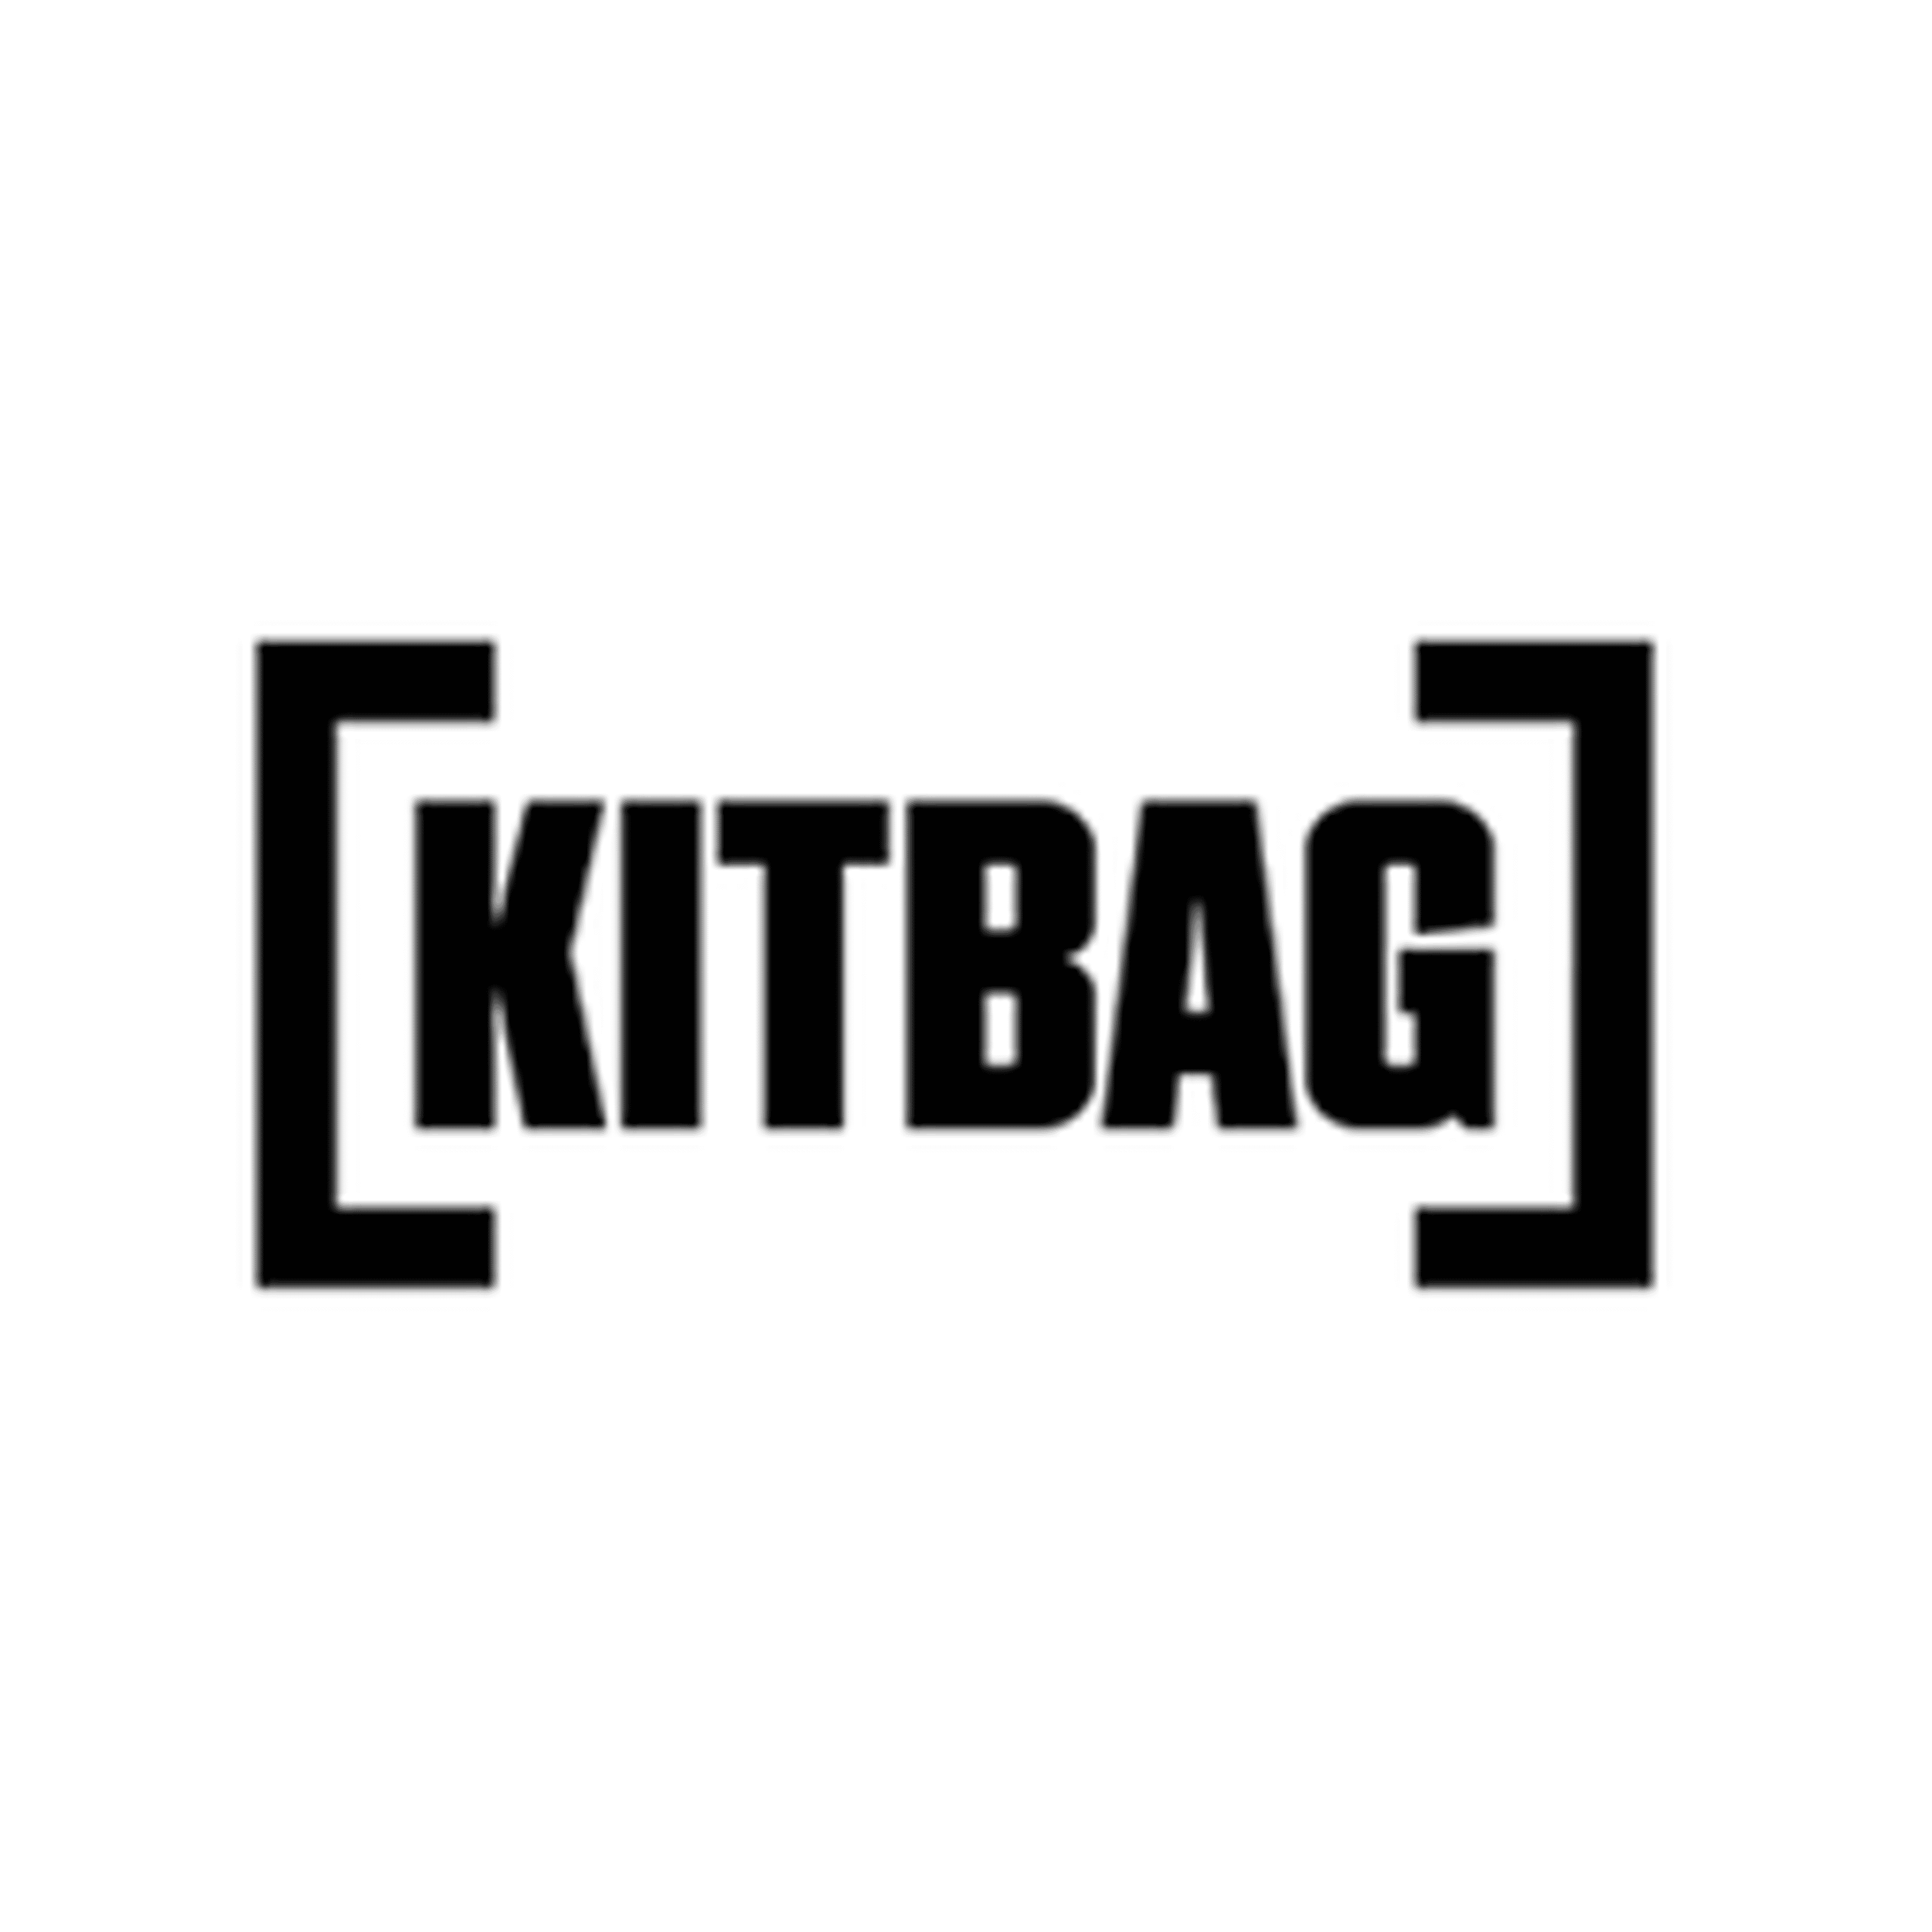  Kitbag 